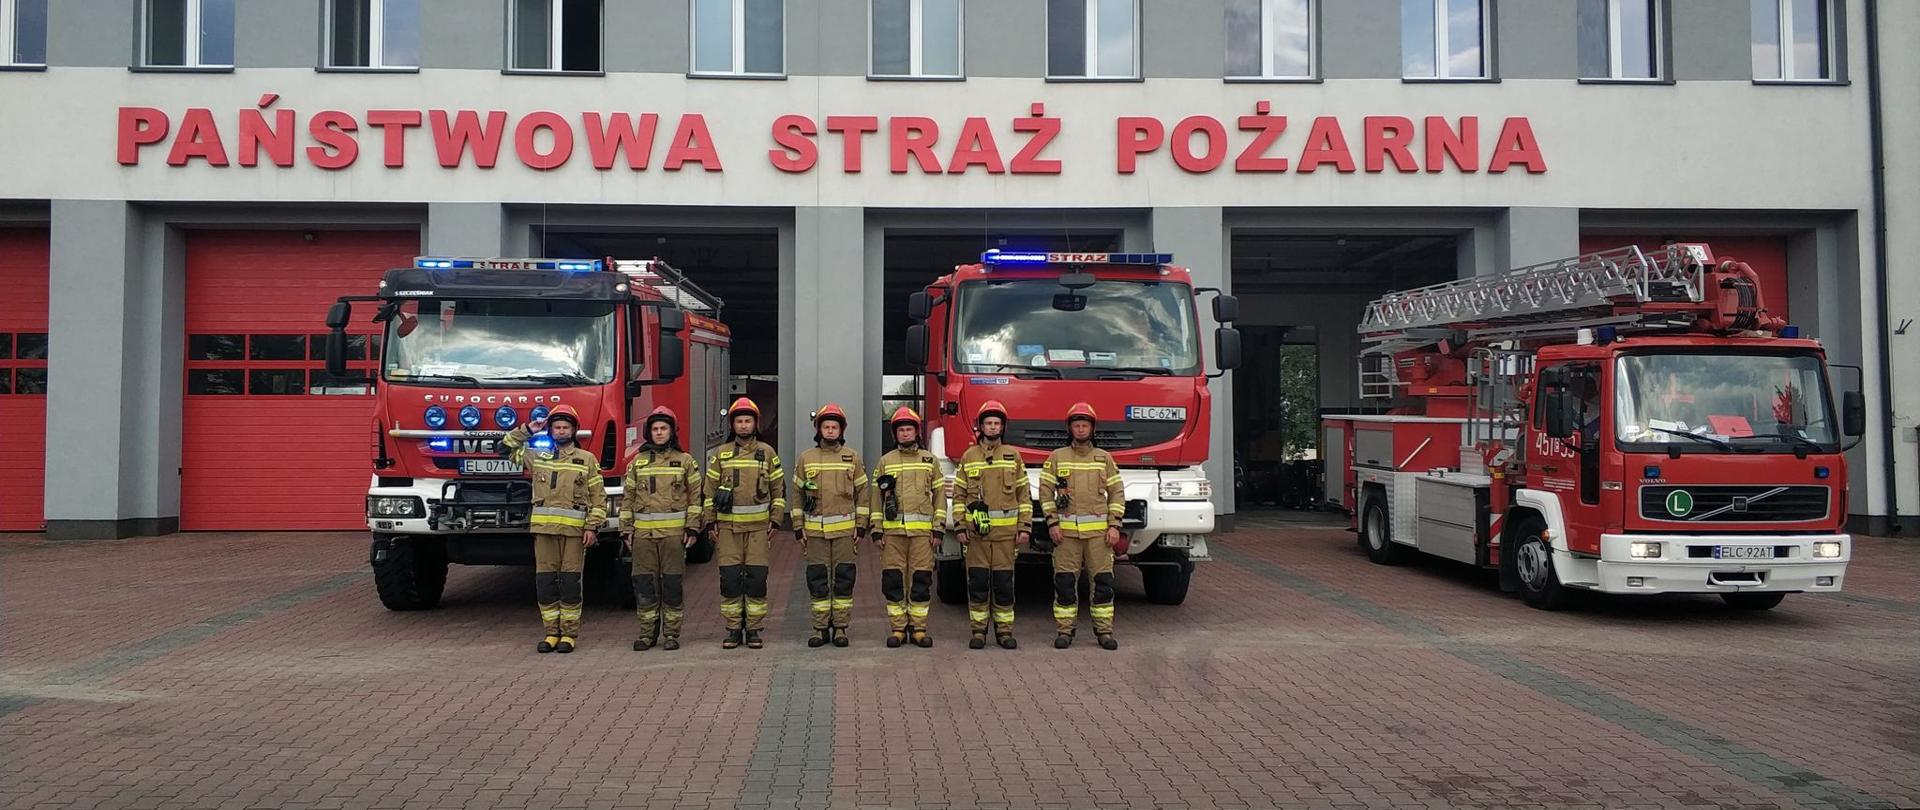 siedmiu strażaków ubranych w stroje specjalne stoi na tle trzech czerwonych samochodów ratowniczo gaśniczych za nimi znajduje się szary budynek z czerwonym napisem Państwowa Straż Pożarna